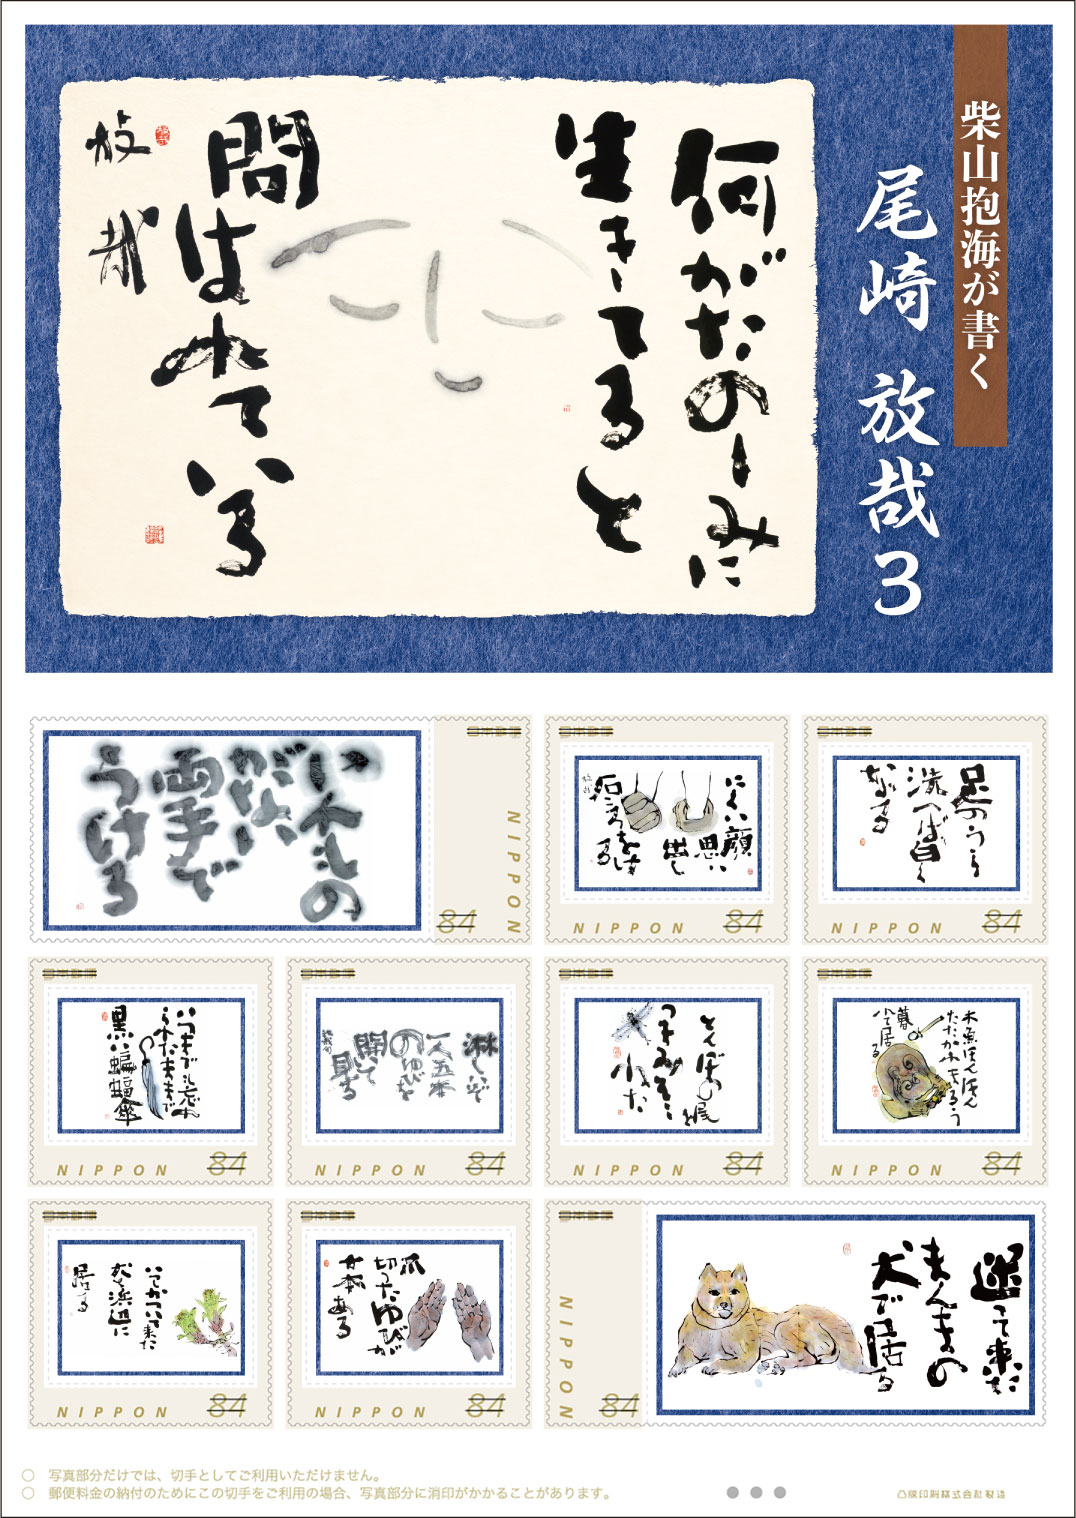 オリジナル フレーム切手 「柴山抱海が書く　尾崎放哉3」の販売開始と贈呈式の開催